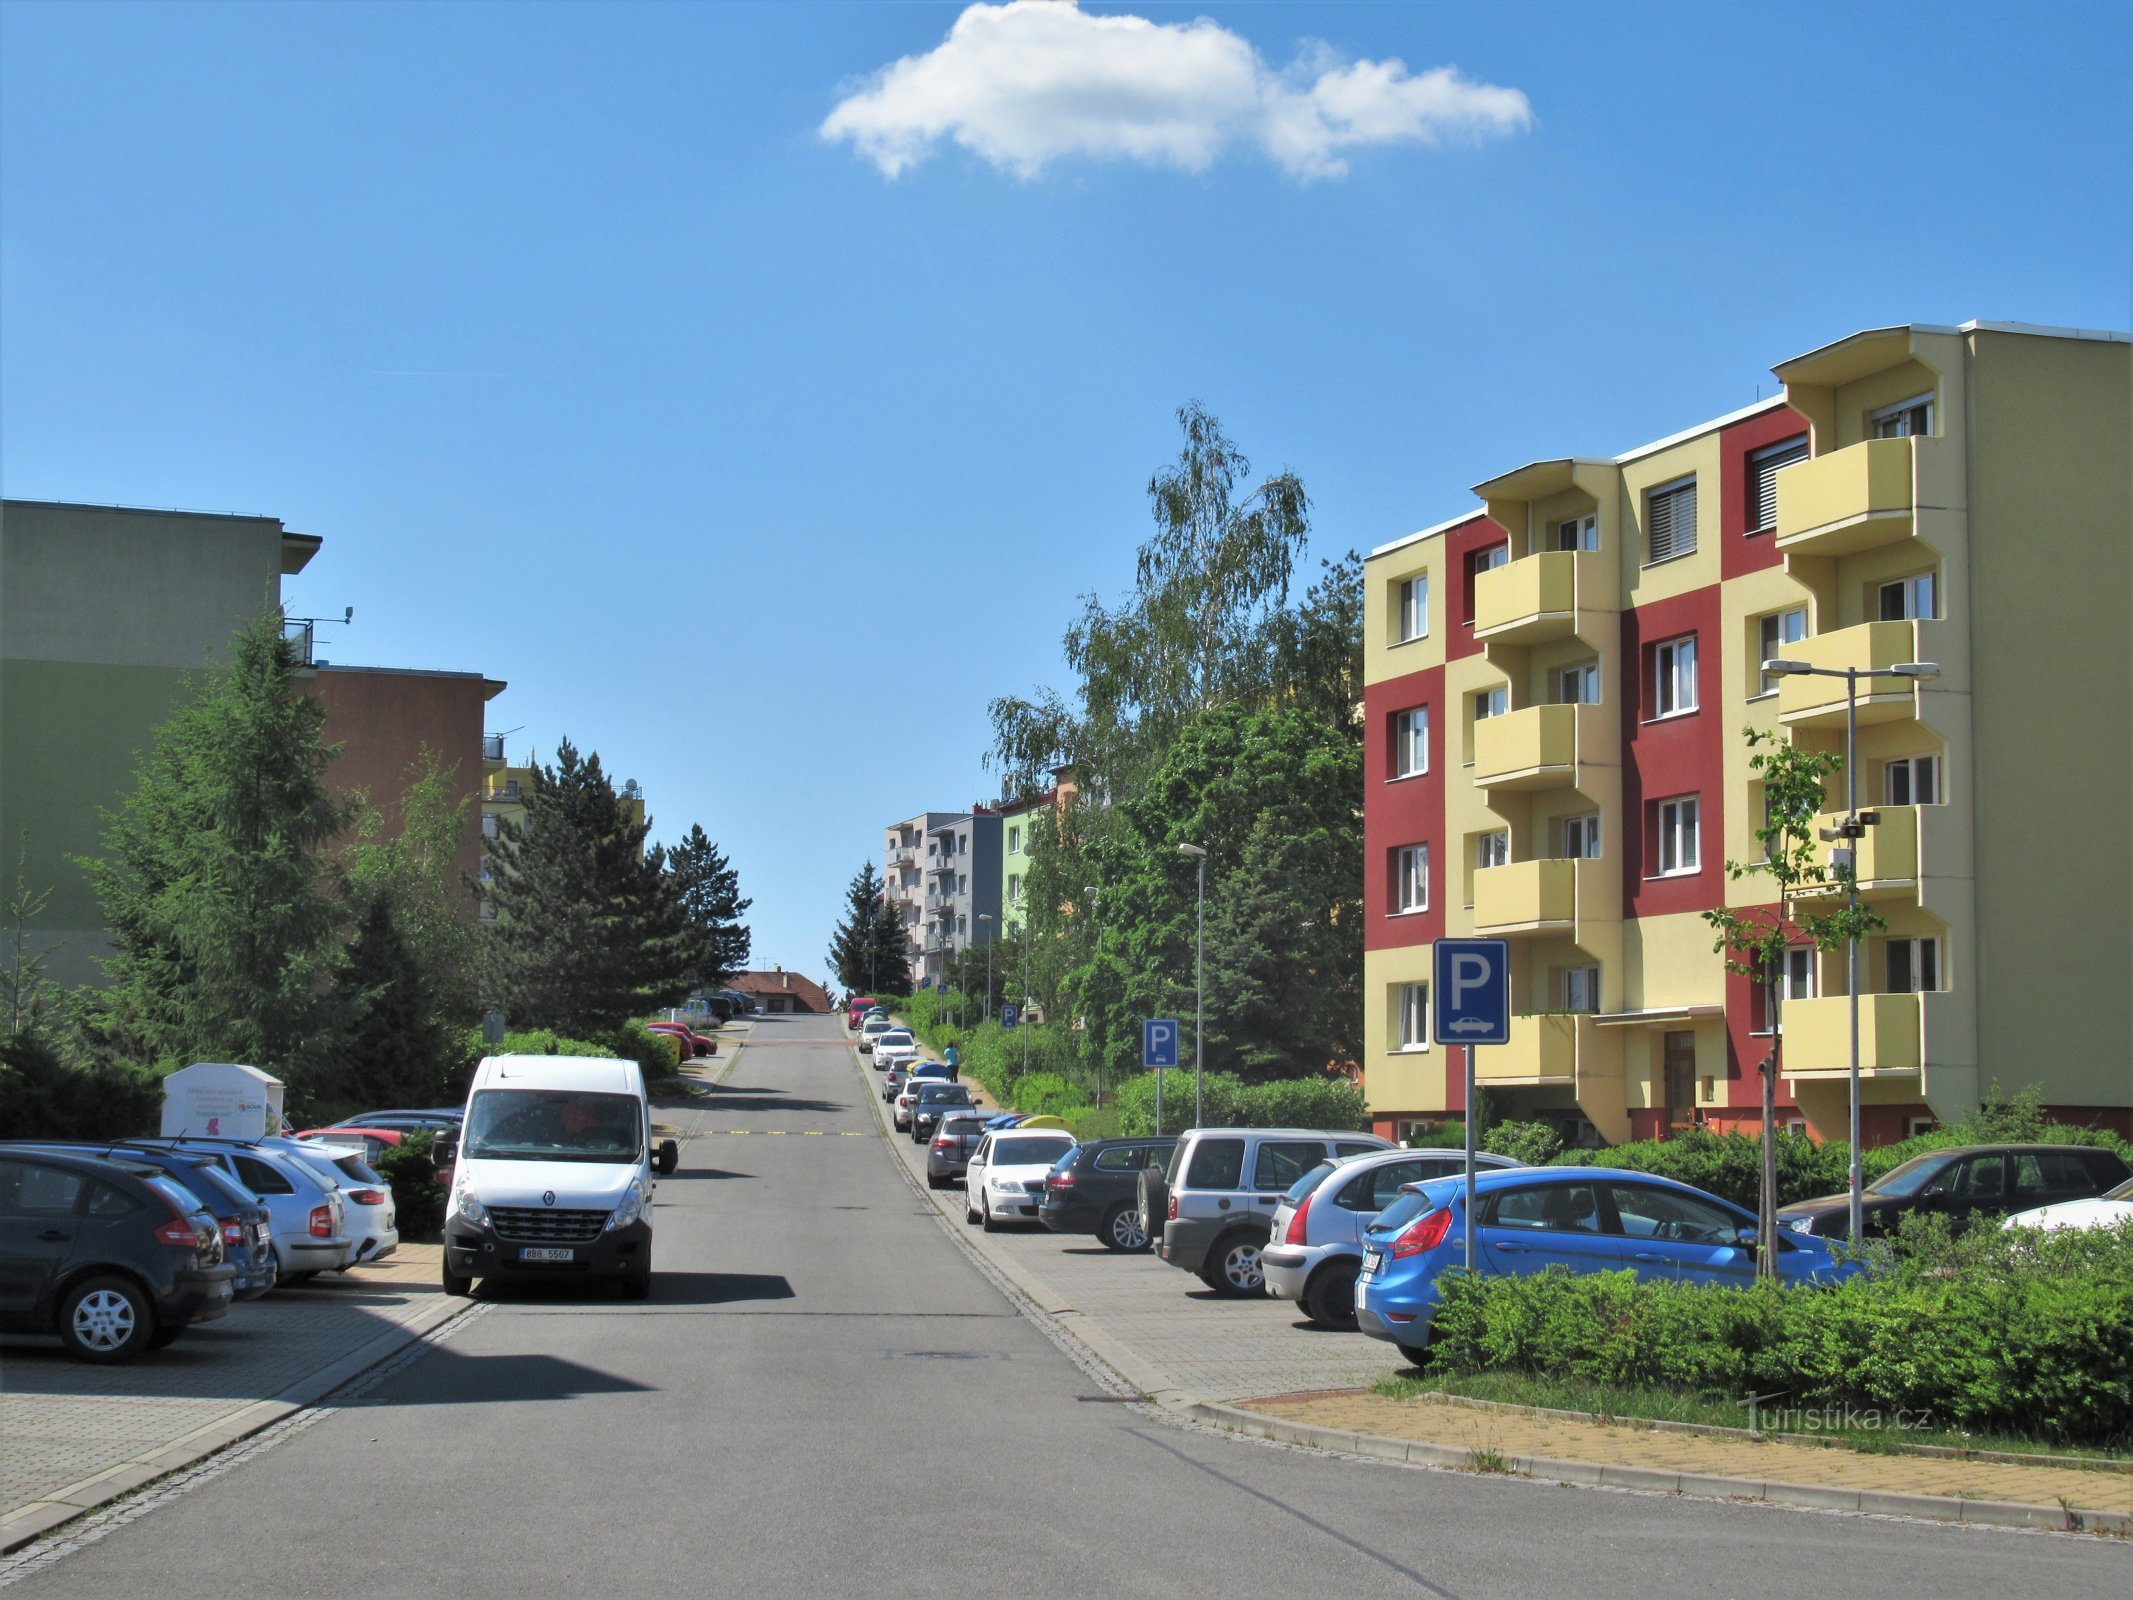 La via Kopánky conduce all'incrocio di U koupaliště